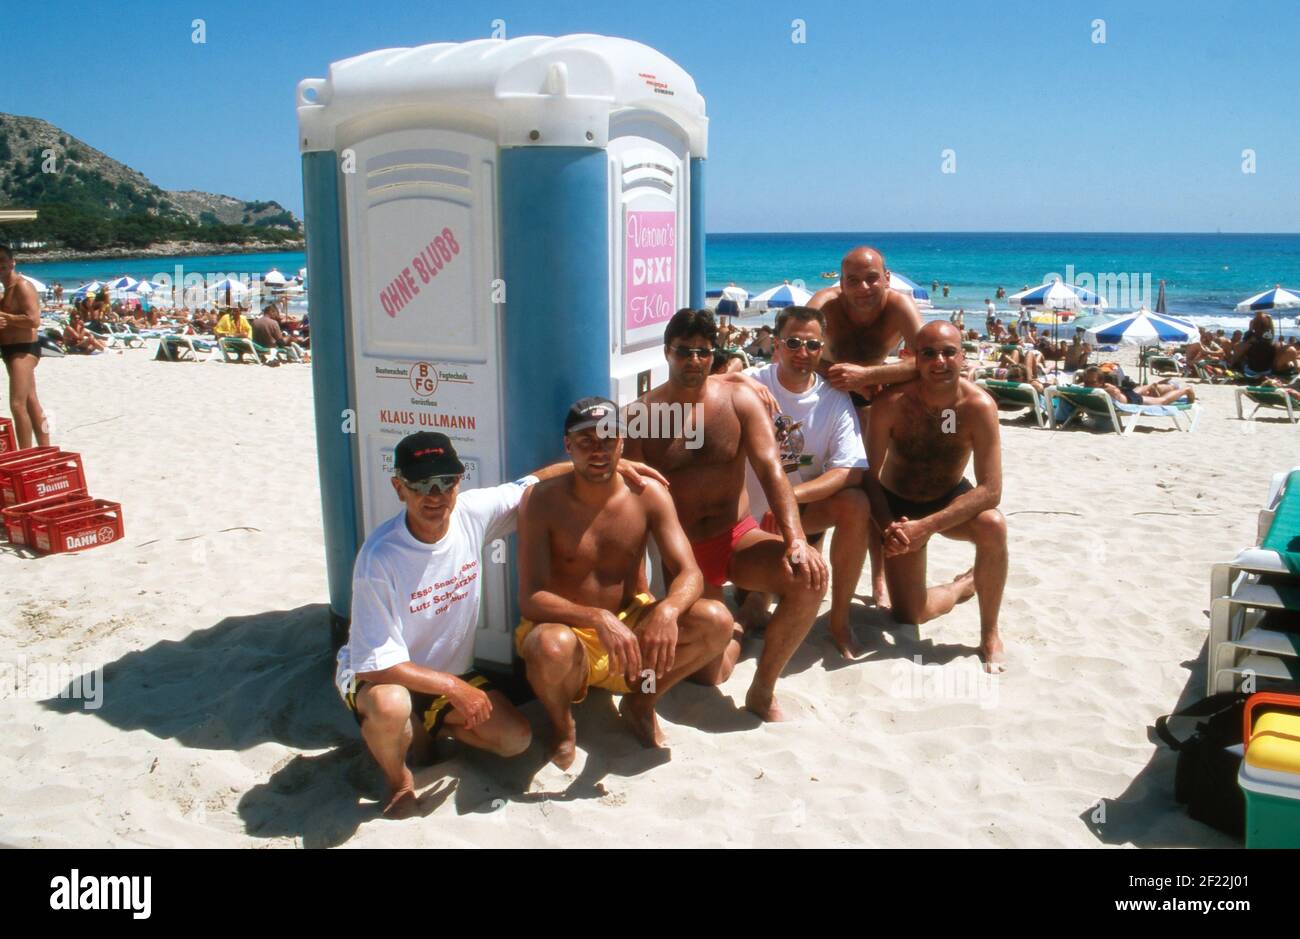 Touristen bezahlen für die Nutzung vom Dixi Klo vom Auftirtt von Verona Feldbusch bei "Big Brother" als Touristenattraktion am Strand von Mallorca, Spanien 2000. Stock Photo